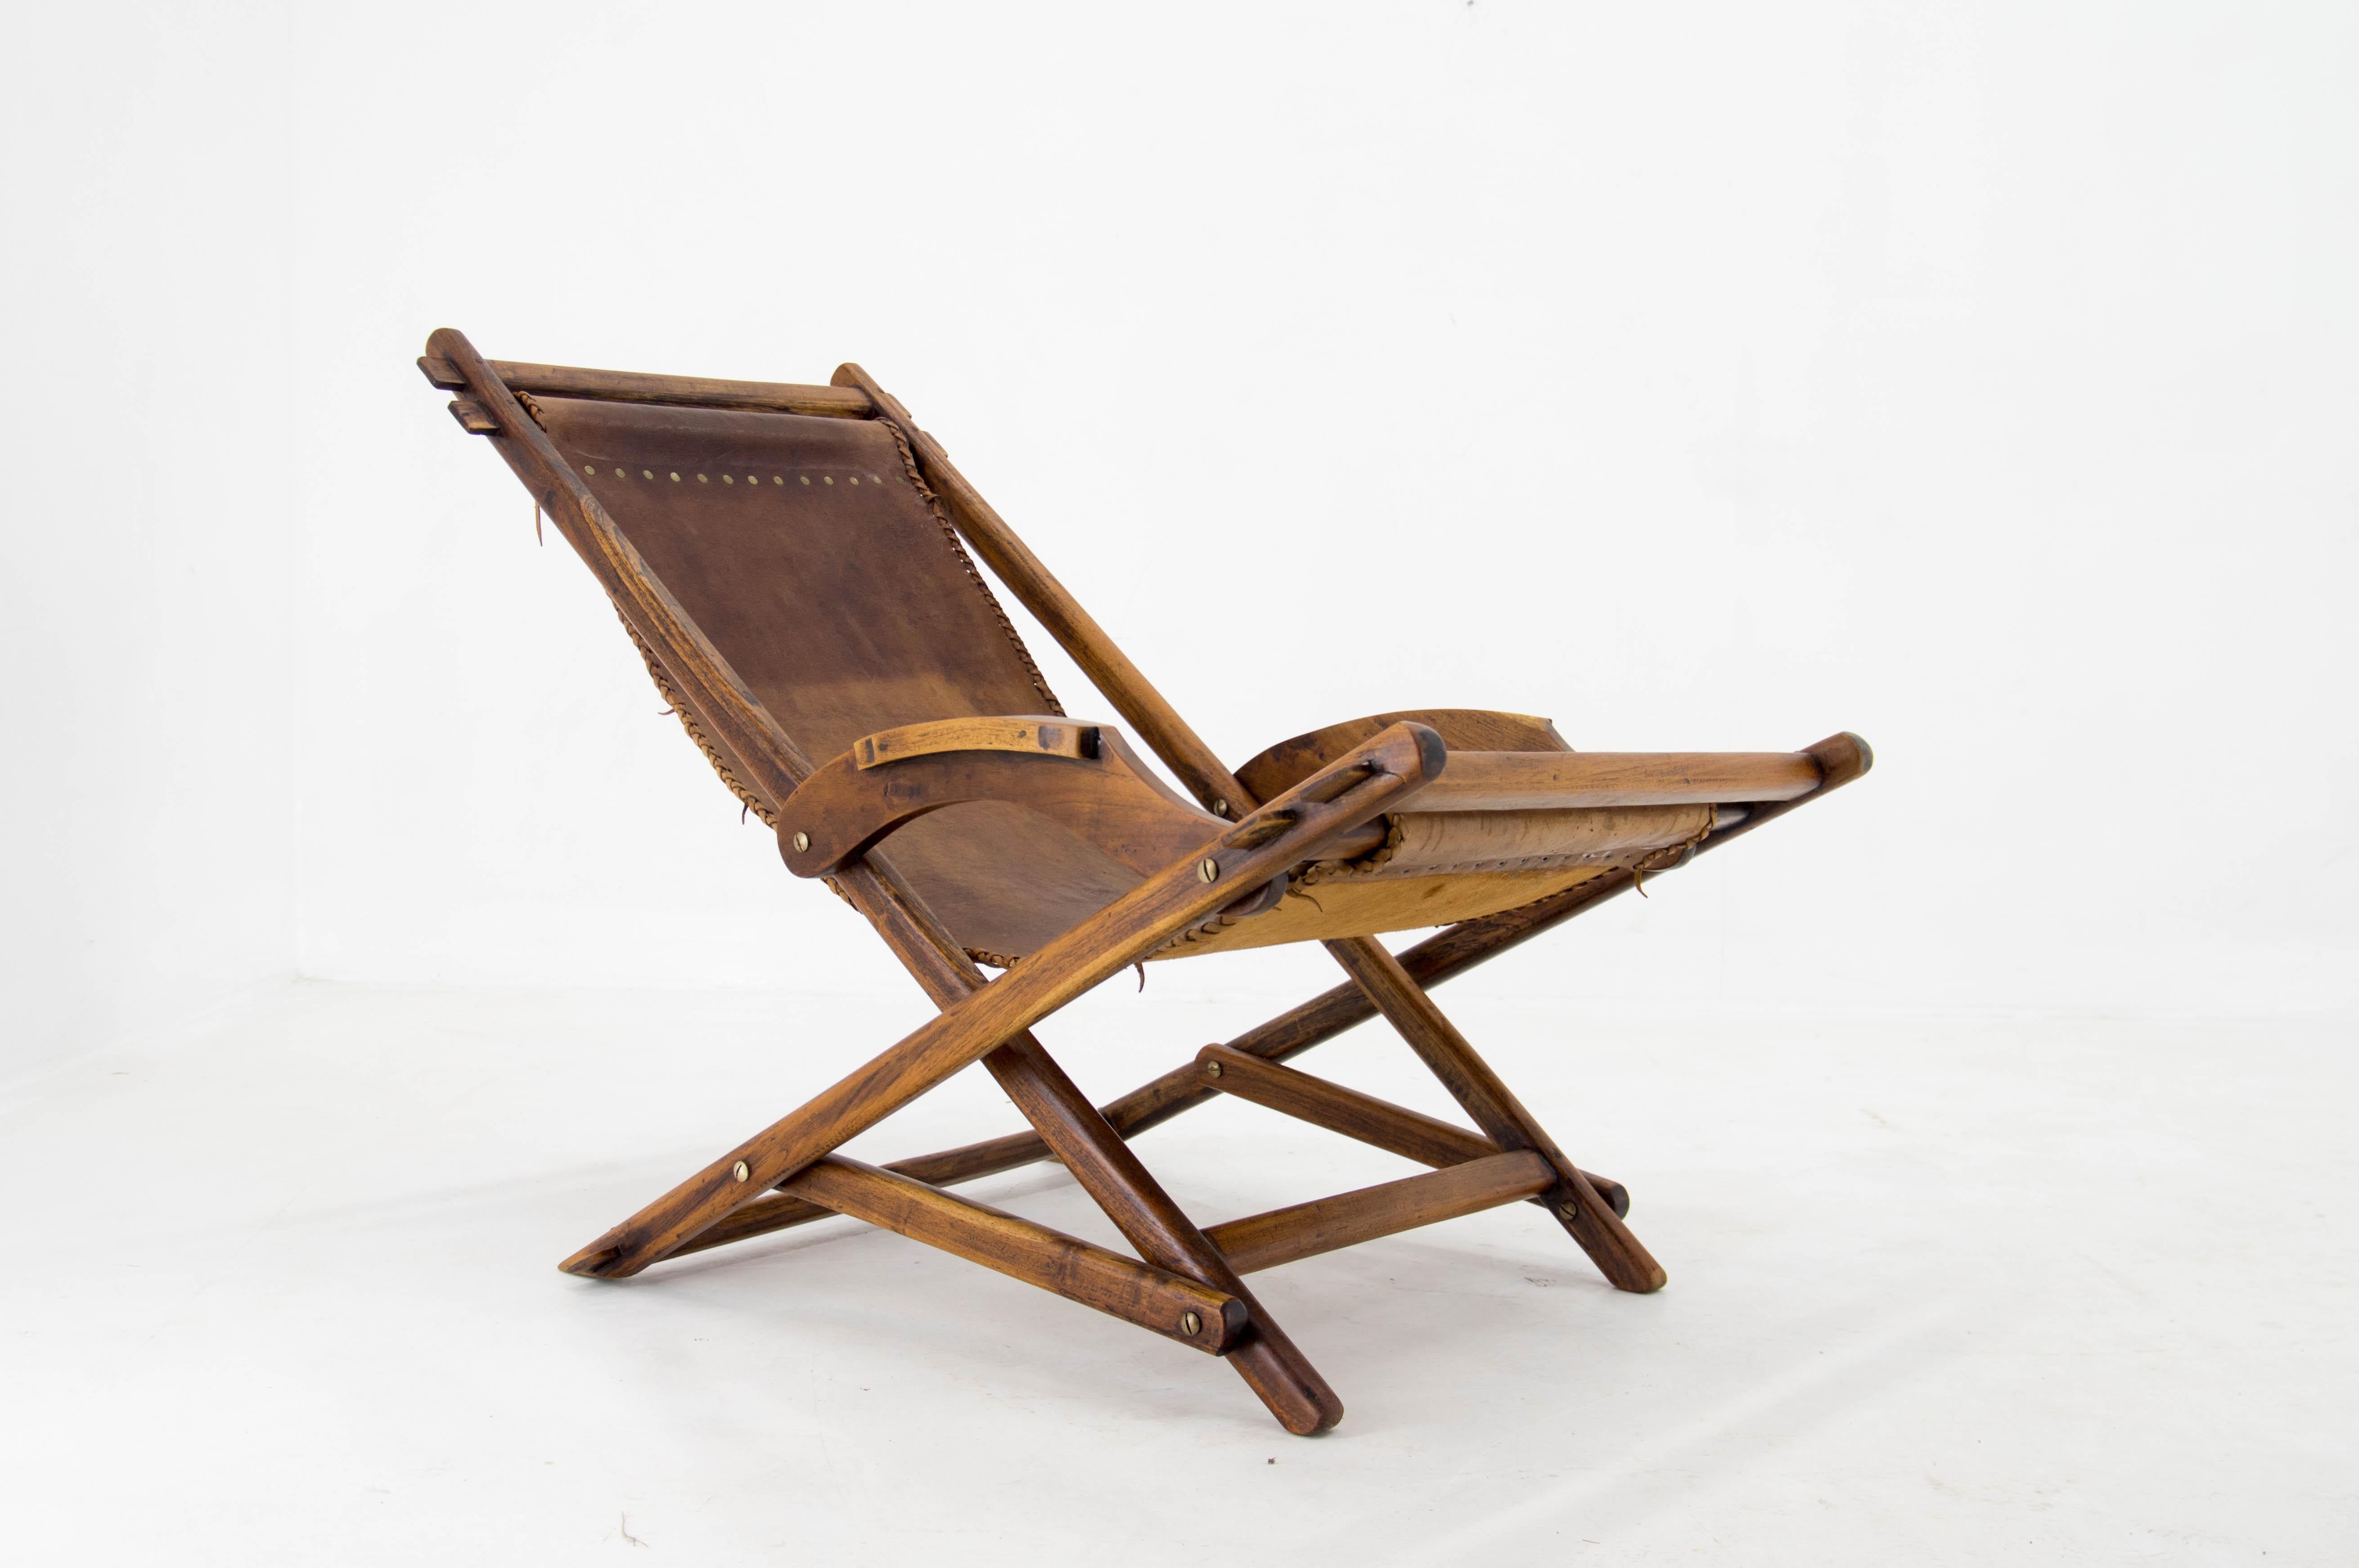 Handgefertigter Sessel mit einzigartigem, ausgeklügeltem Schaukelsystem.
Hergestellt aus Ulme und echtem Leder in den 1940er Jahren in der Tschechoslowakei.
Sehr guter Zustand.